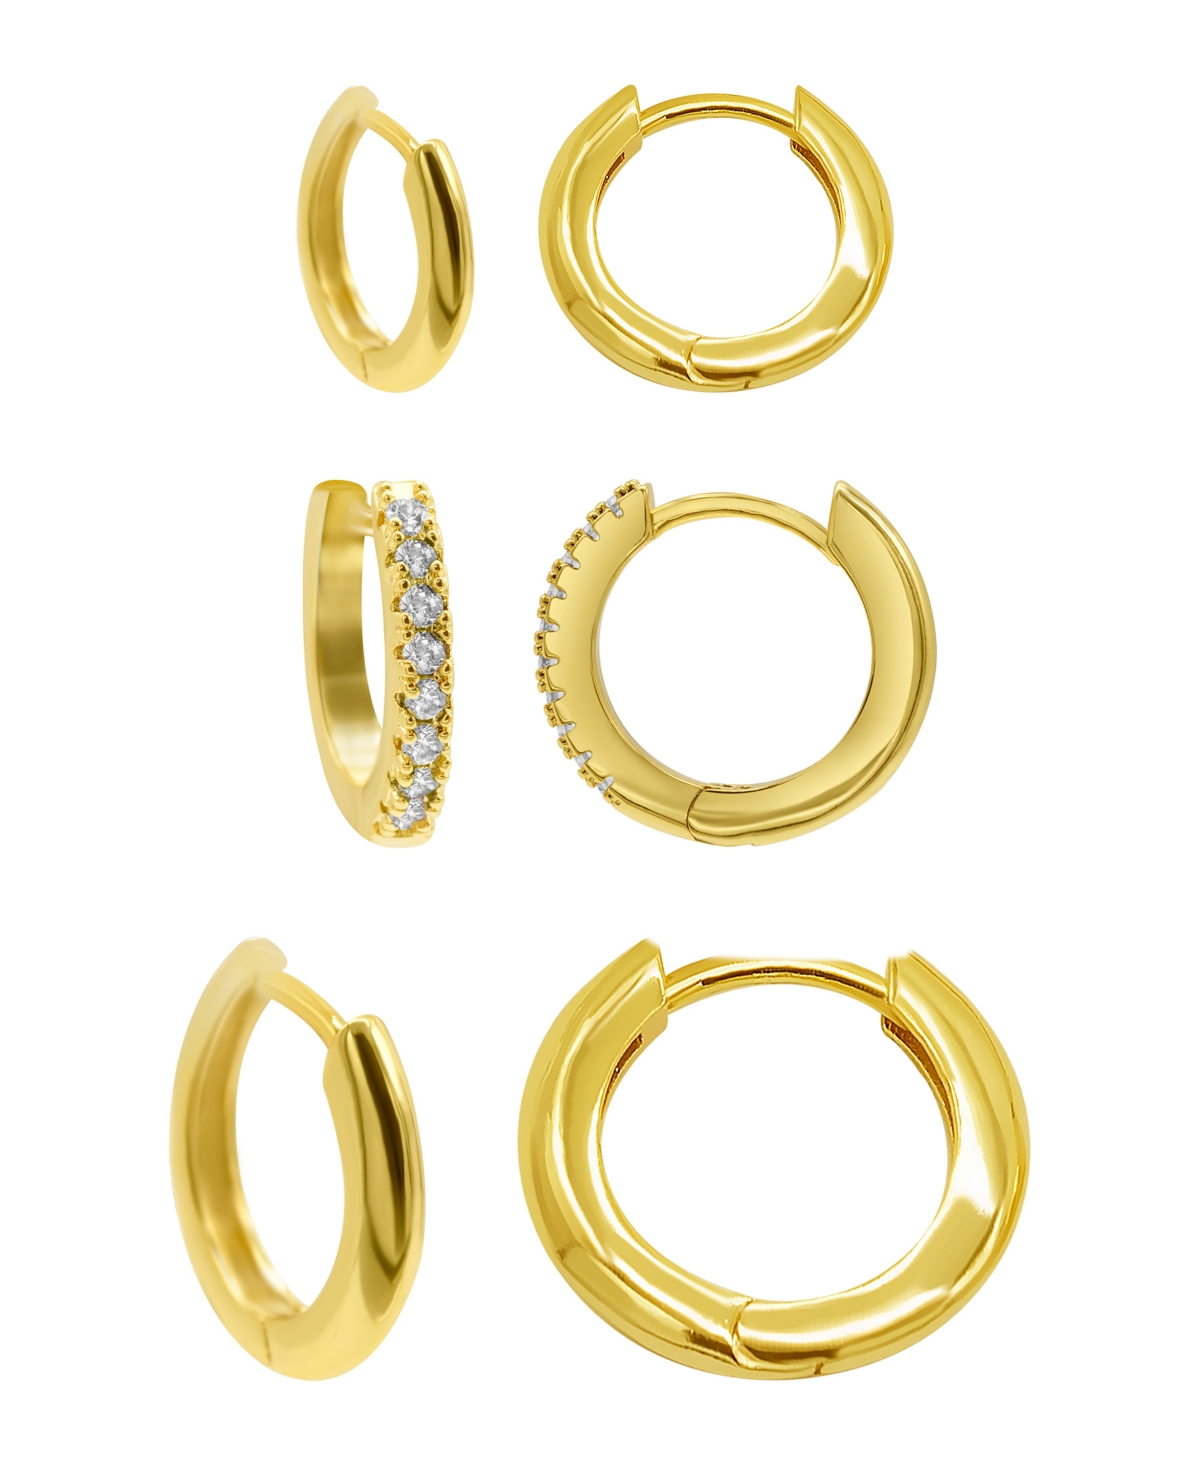 Shop Adornia 14k Gold Plated 3-huggie Hoop Earrings Set With 1-crystal Hoop